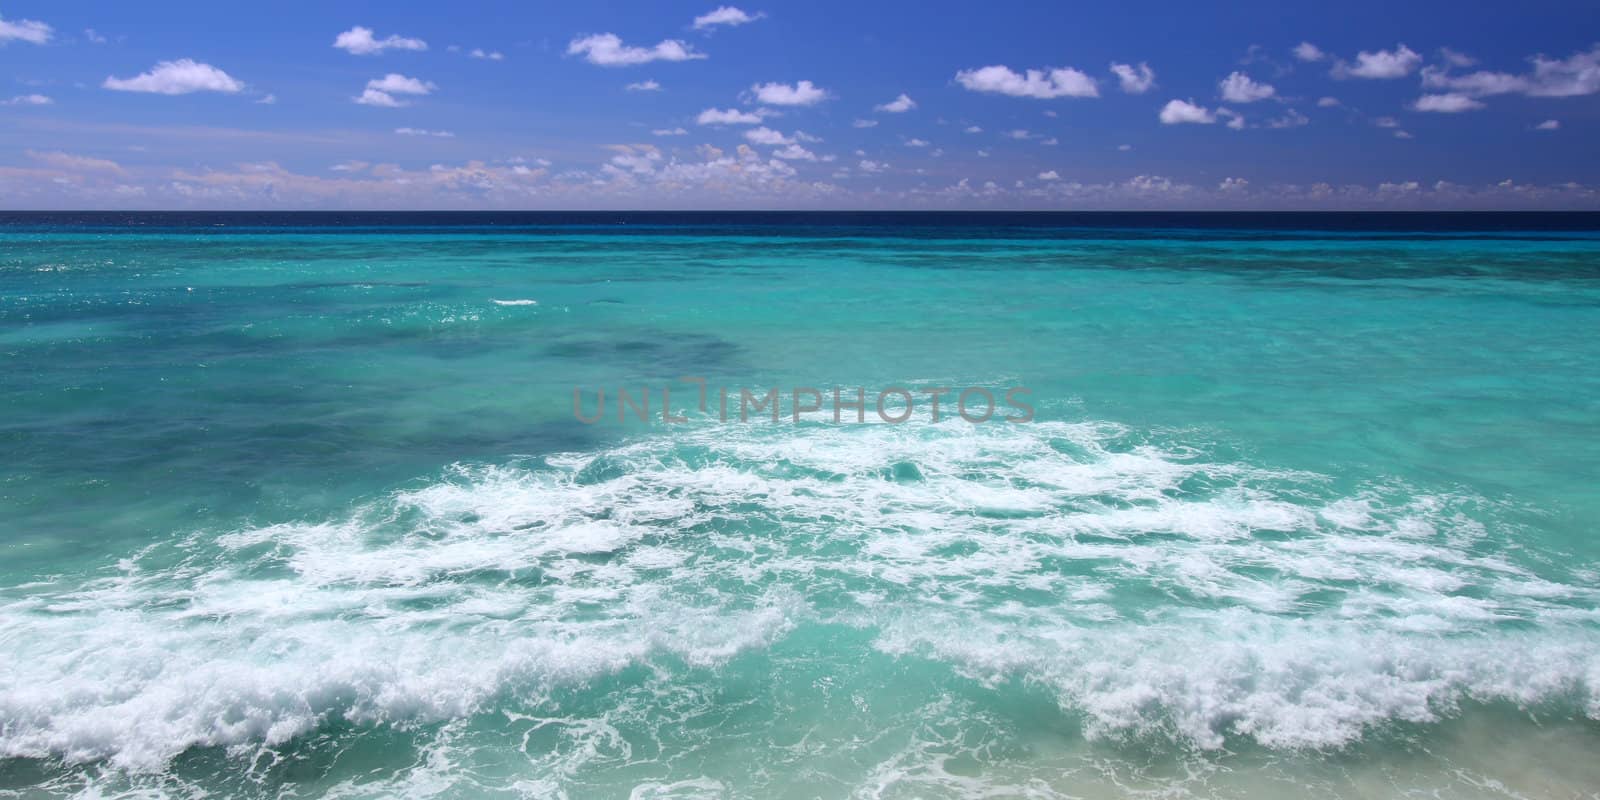 Atlantic Ocean from Barbados by Wirepec